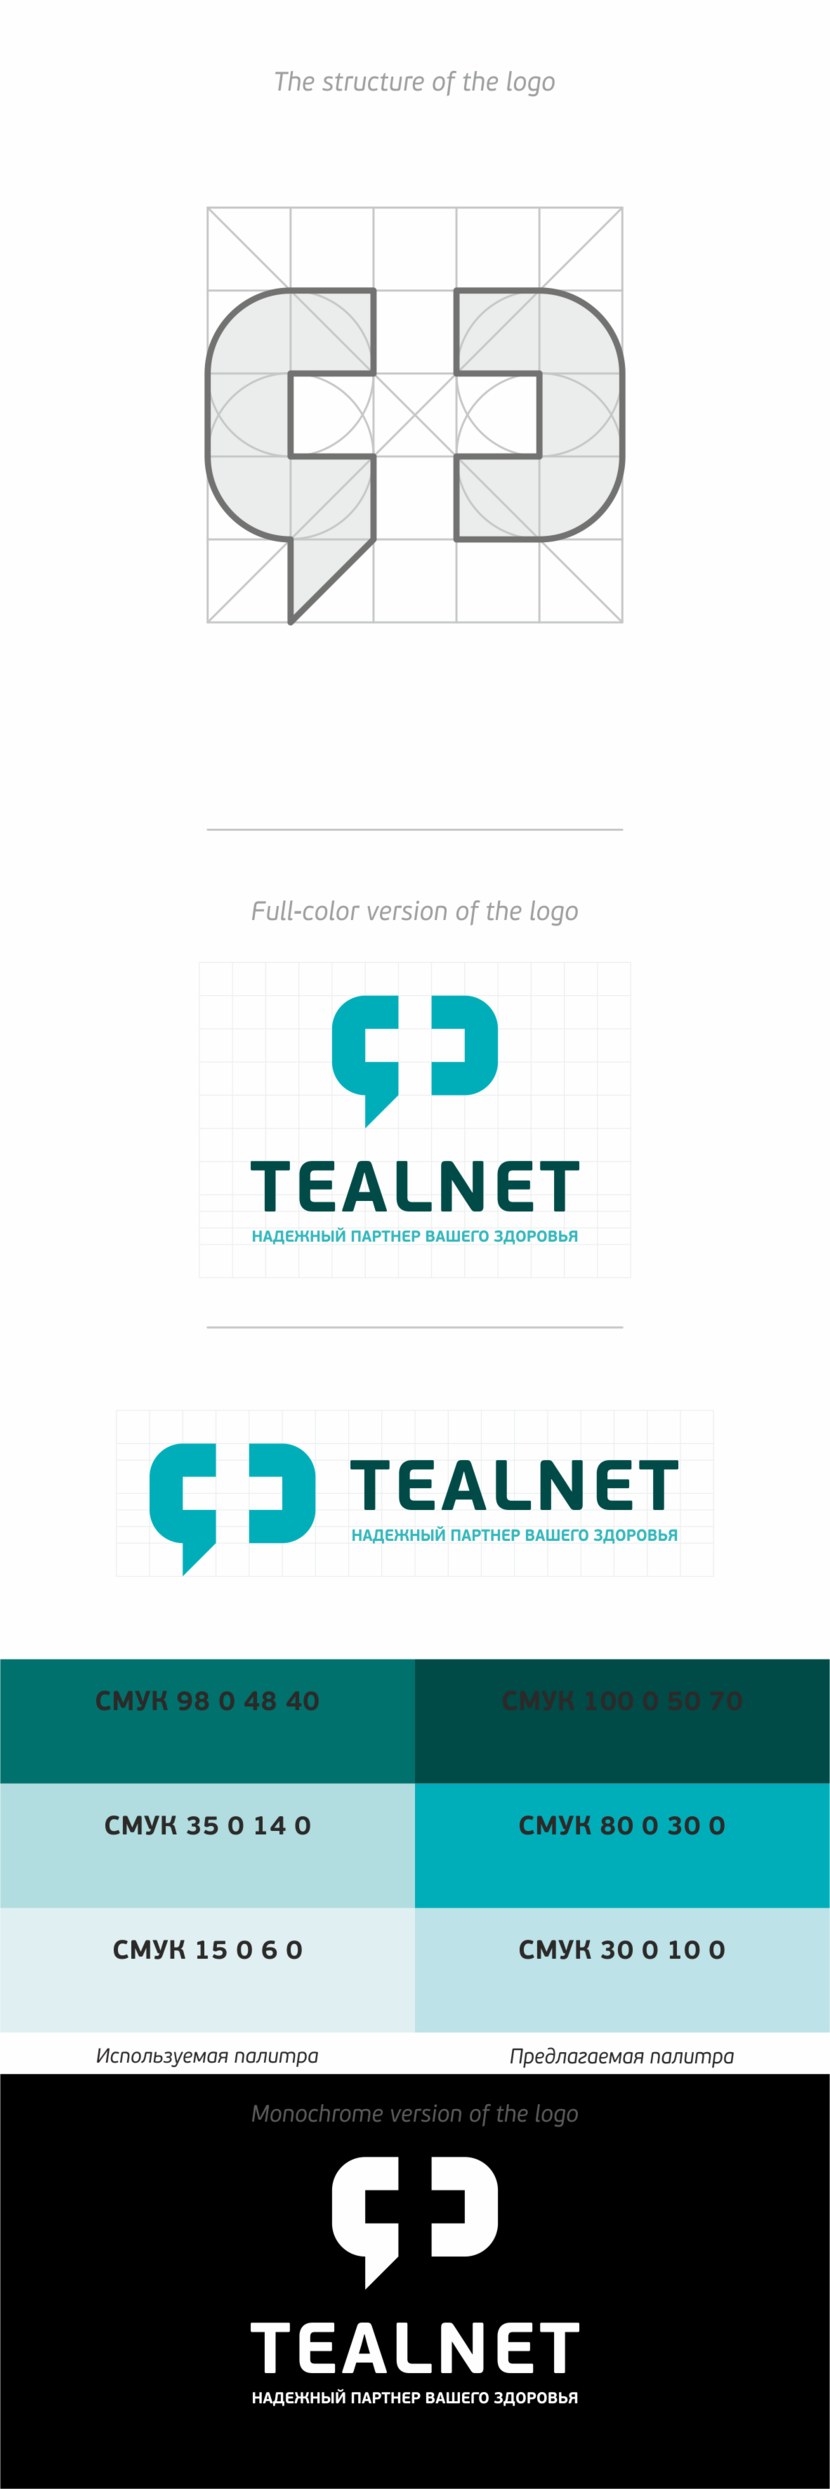 +) Создание логотипа медицинской платформы Tealnet